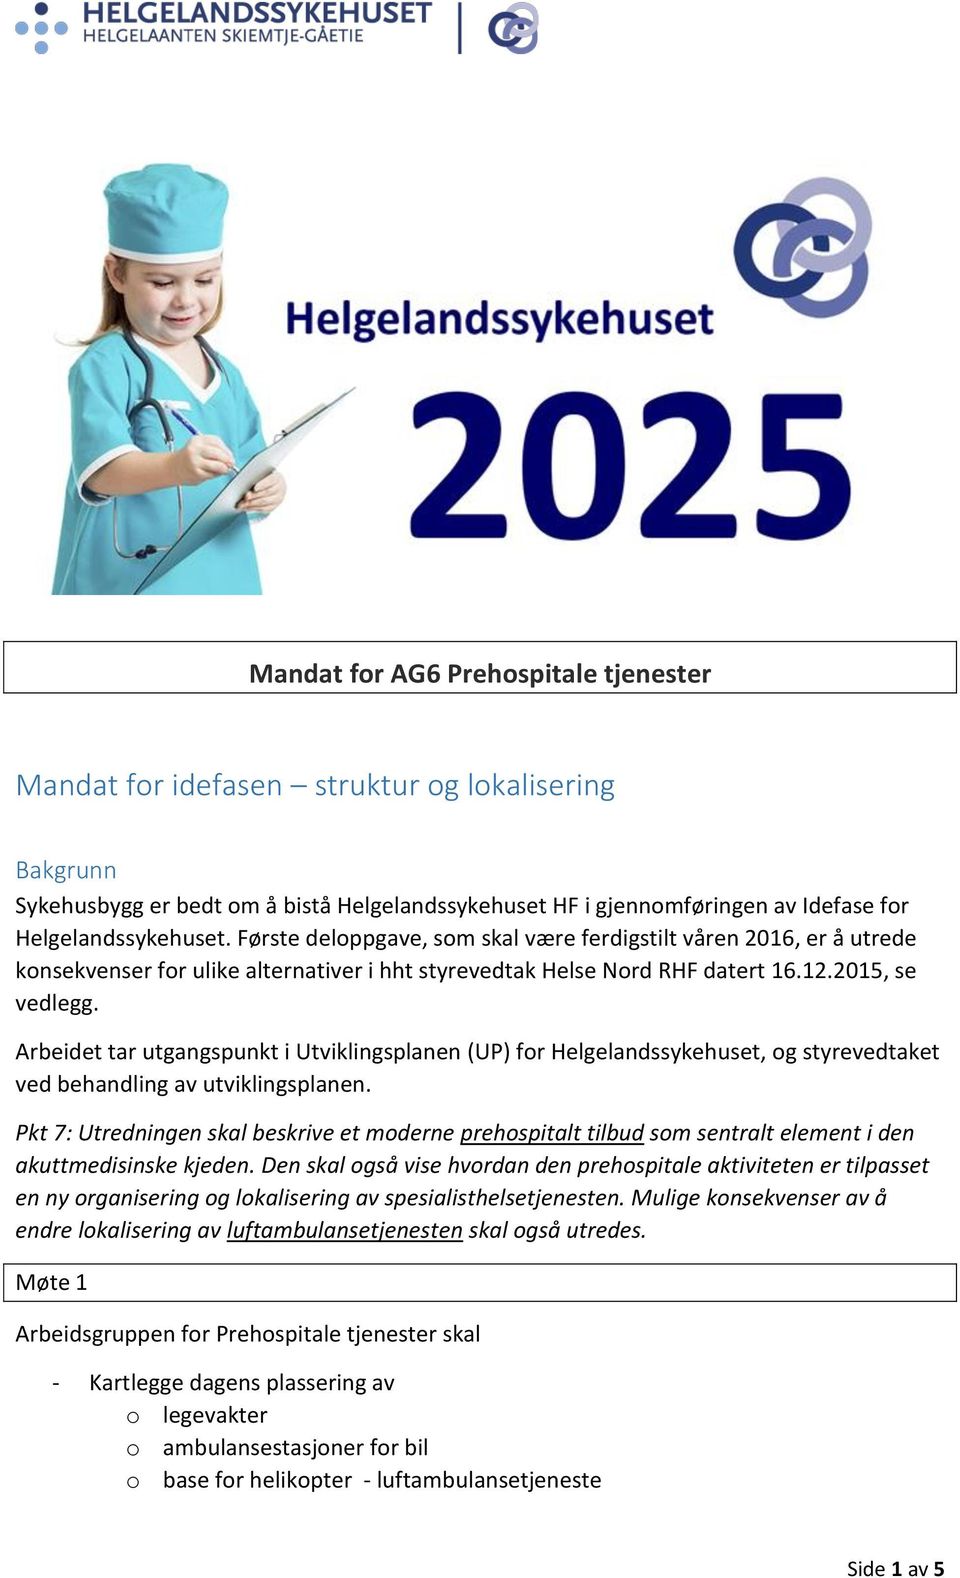 Arbeidet tar utgangspunkt i Utviklingsplanen (UP) for Helgelandssykehuset, og styrevedtaket ved behandling av utviklingsplanen.